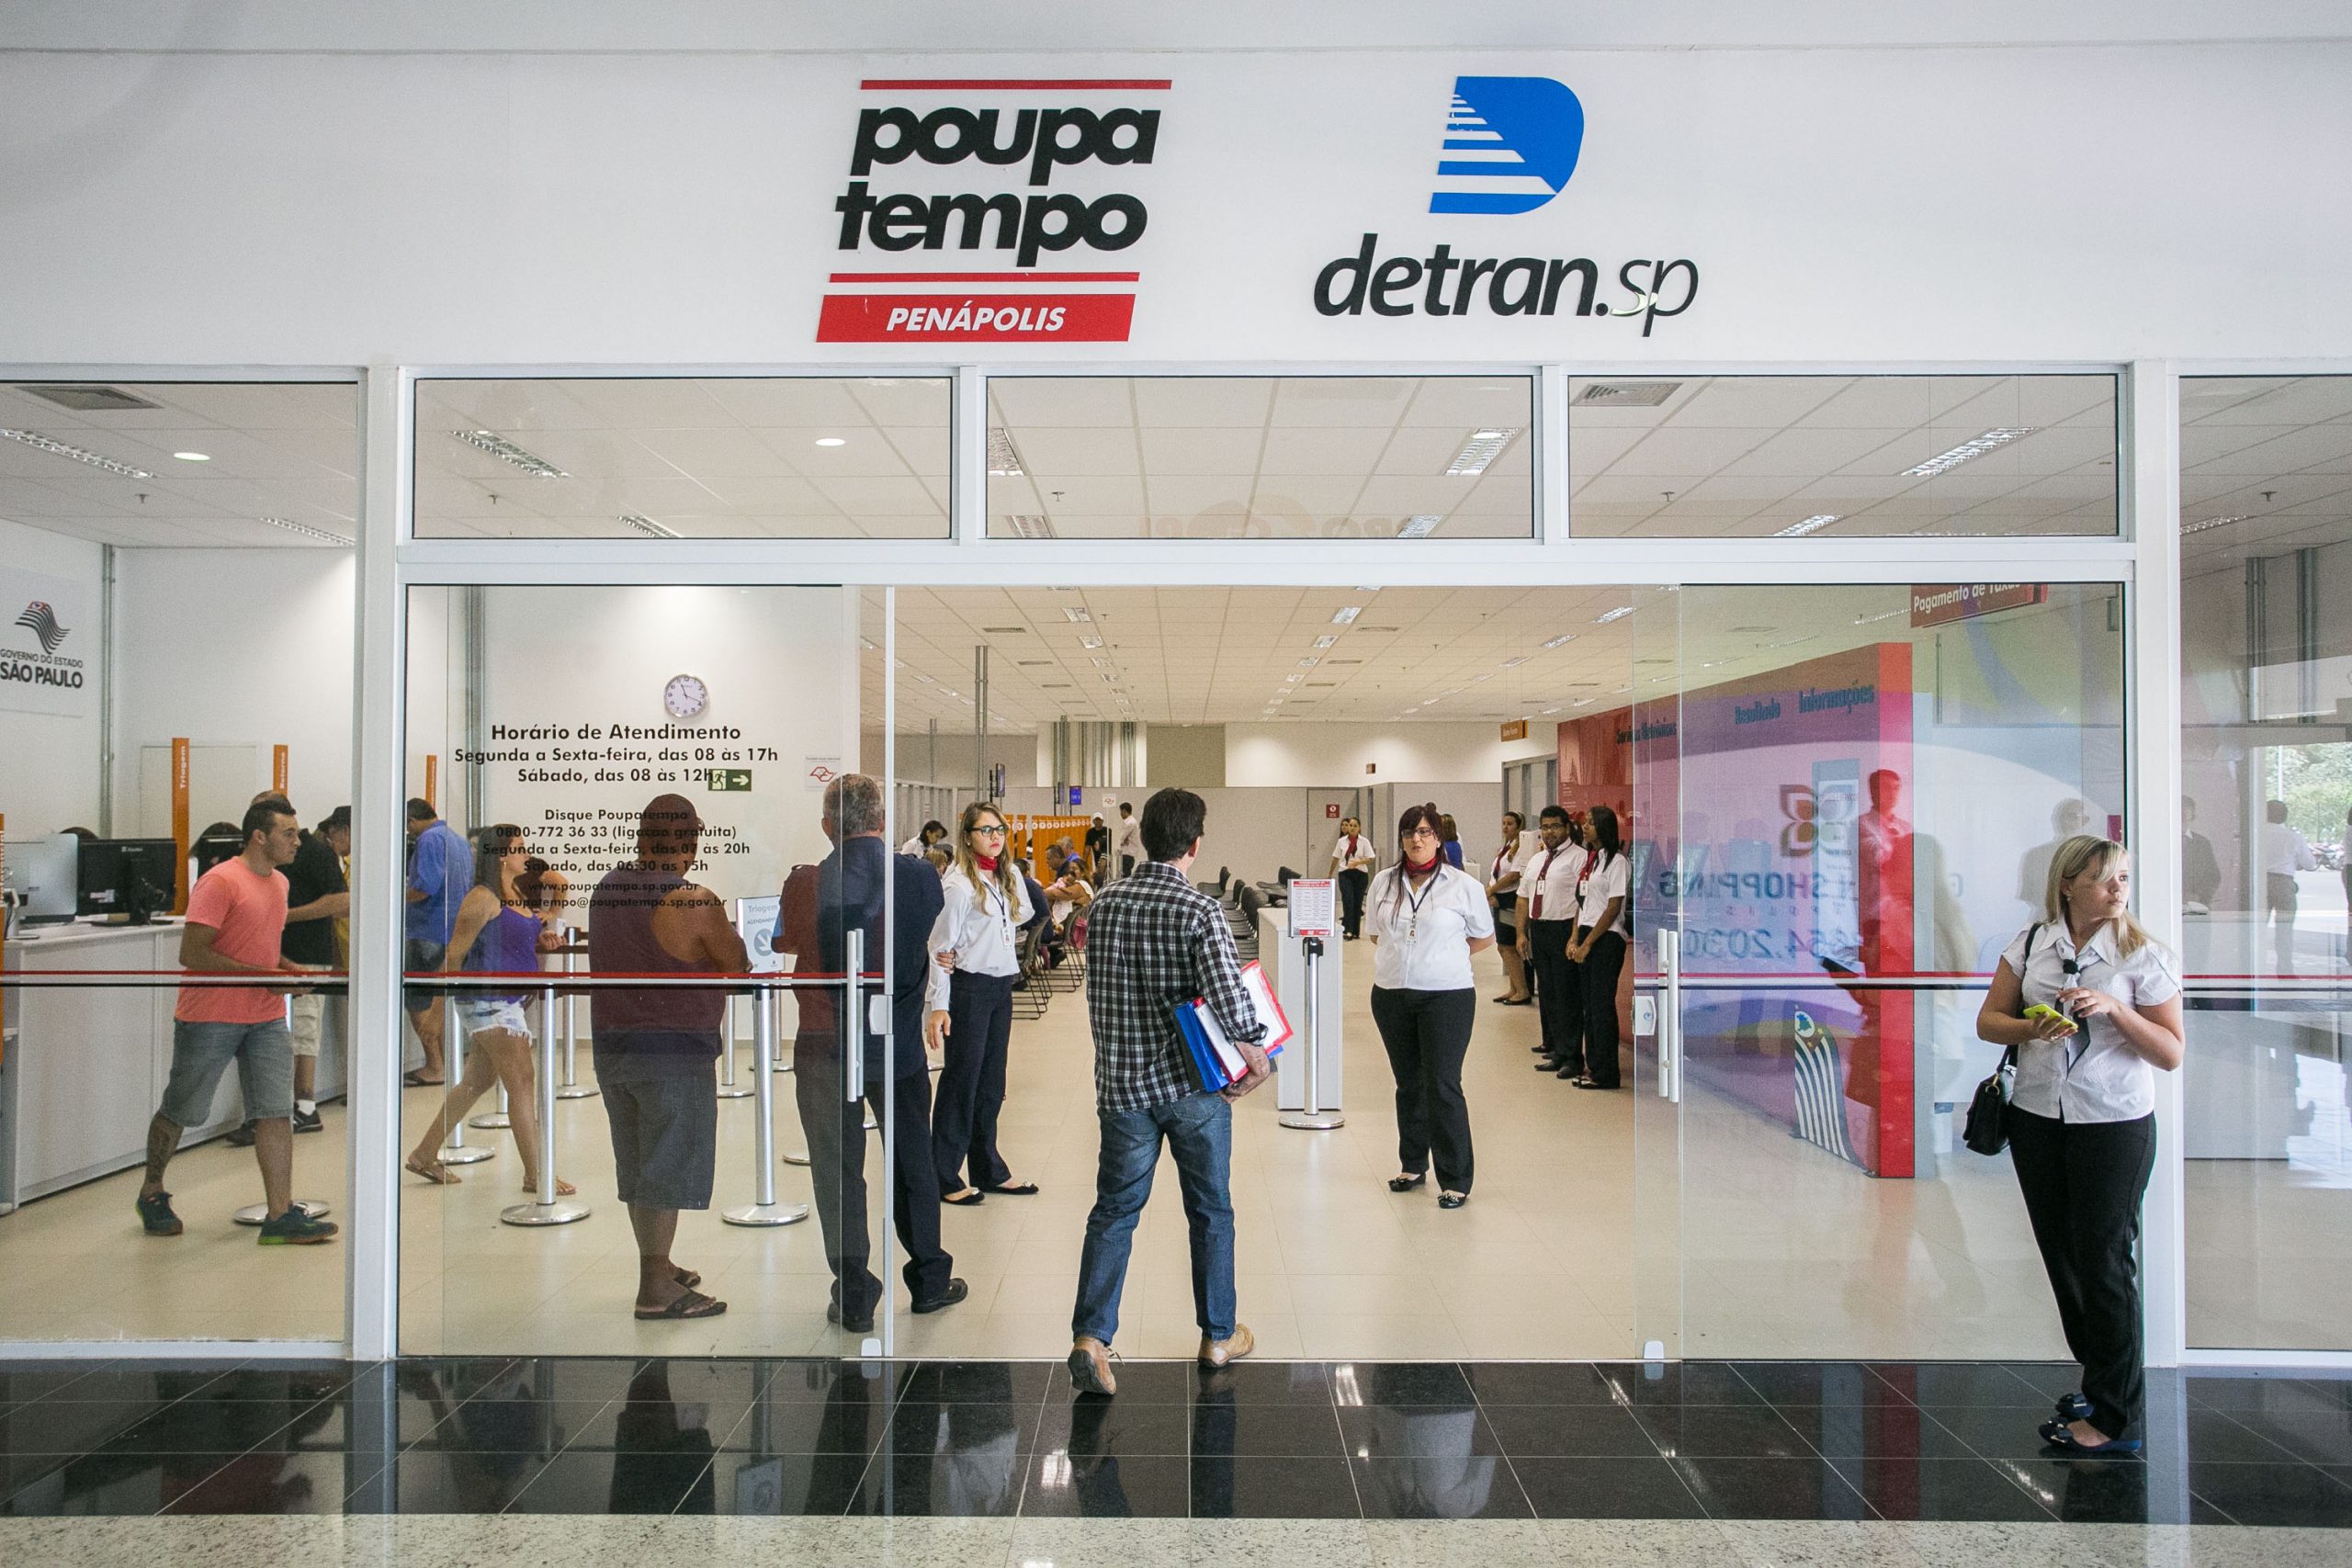 Detran 2022 SP: Como consultar os débitos pelo Poupatempo?